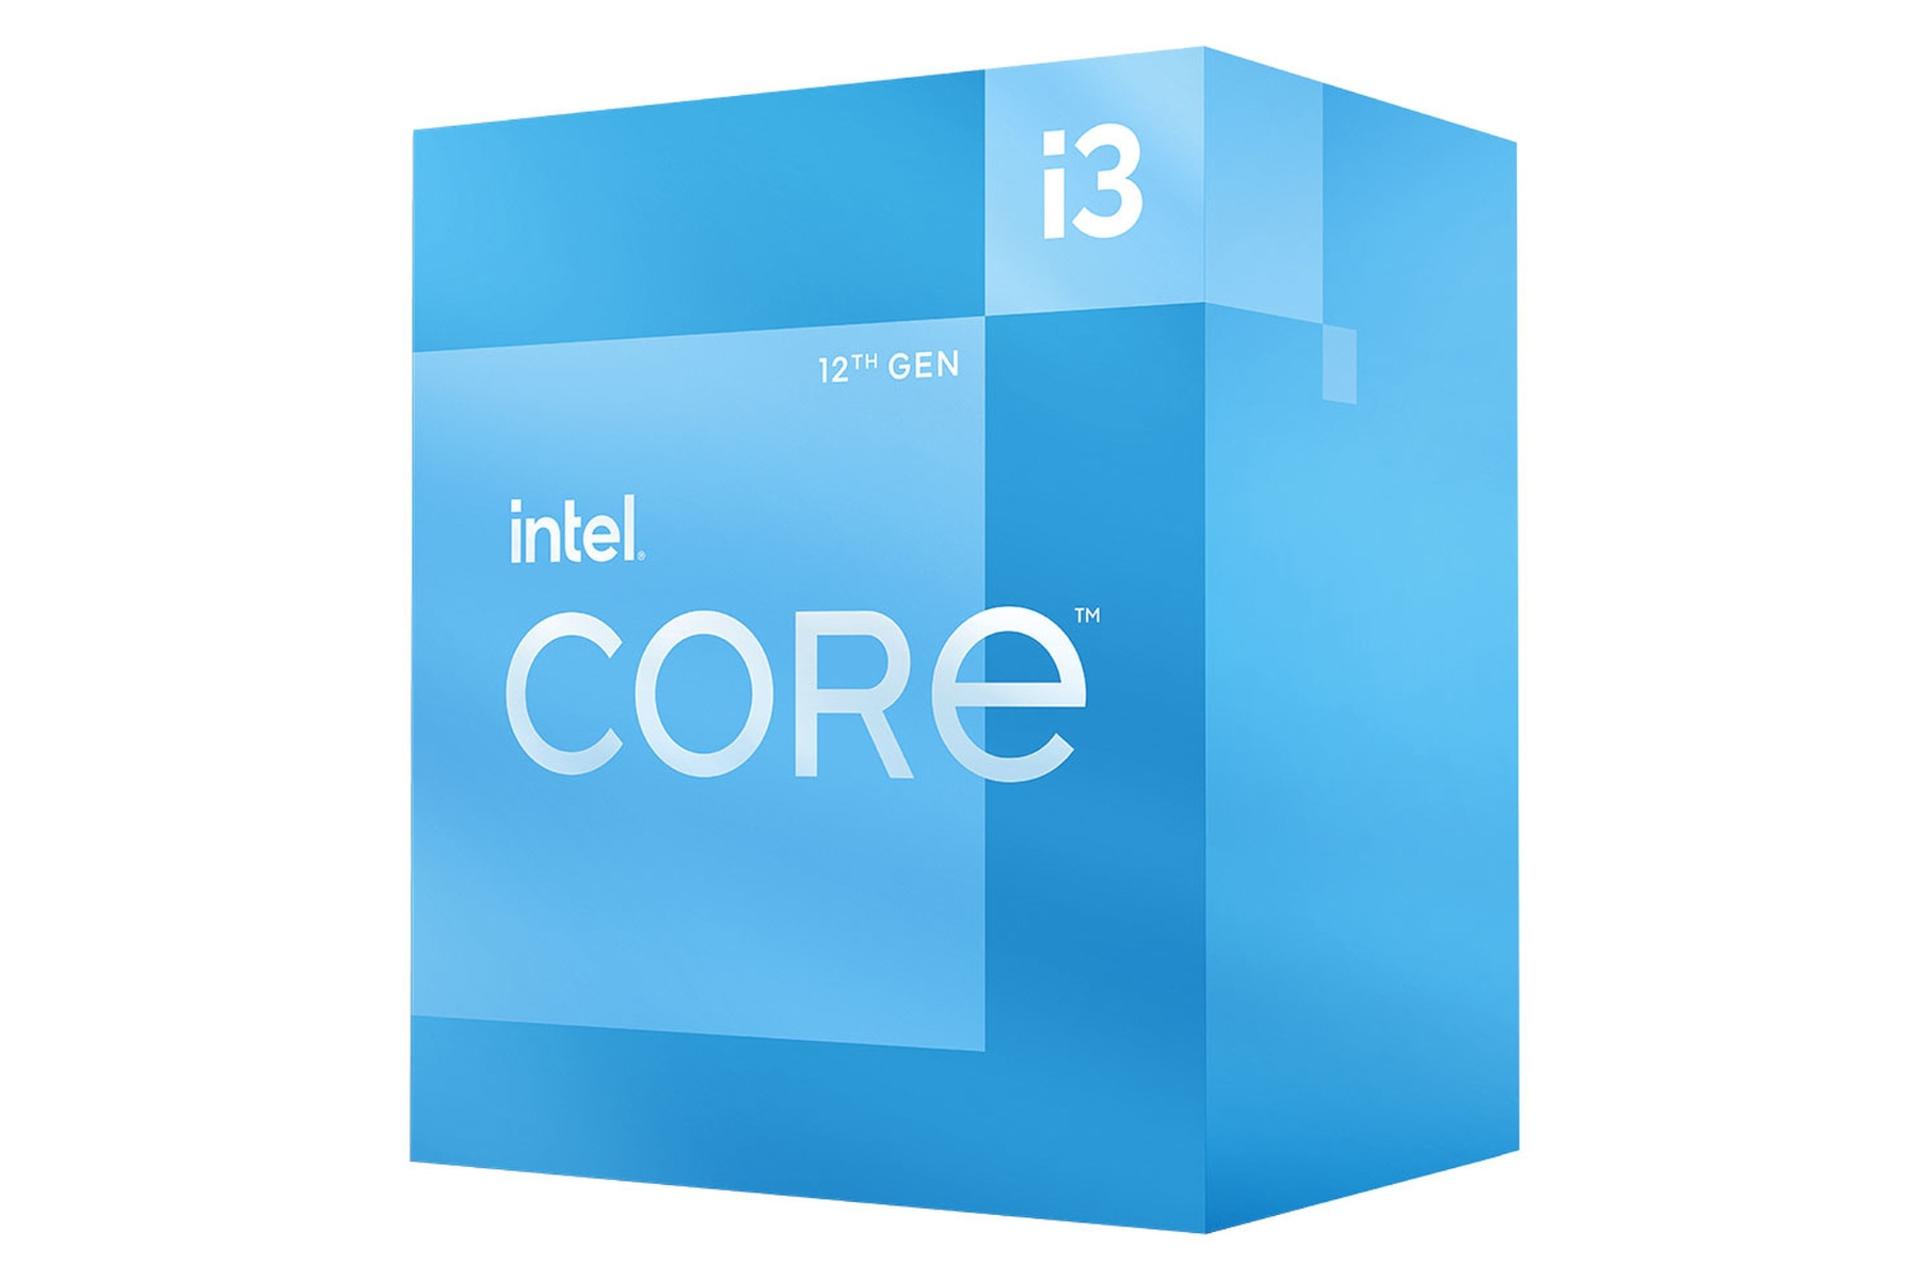 نمای راست جعبه پردازنده اینتل Core i3 نسل دوازدهم / Intel Core i3 12th Gen